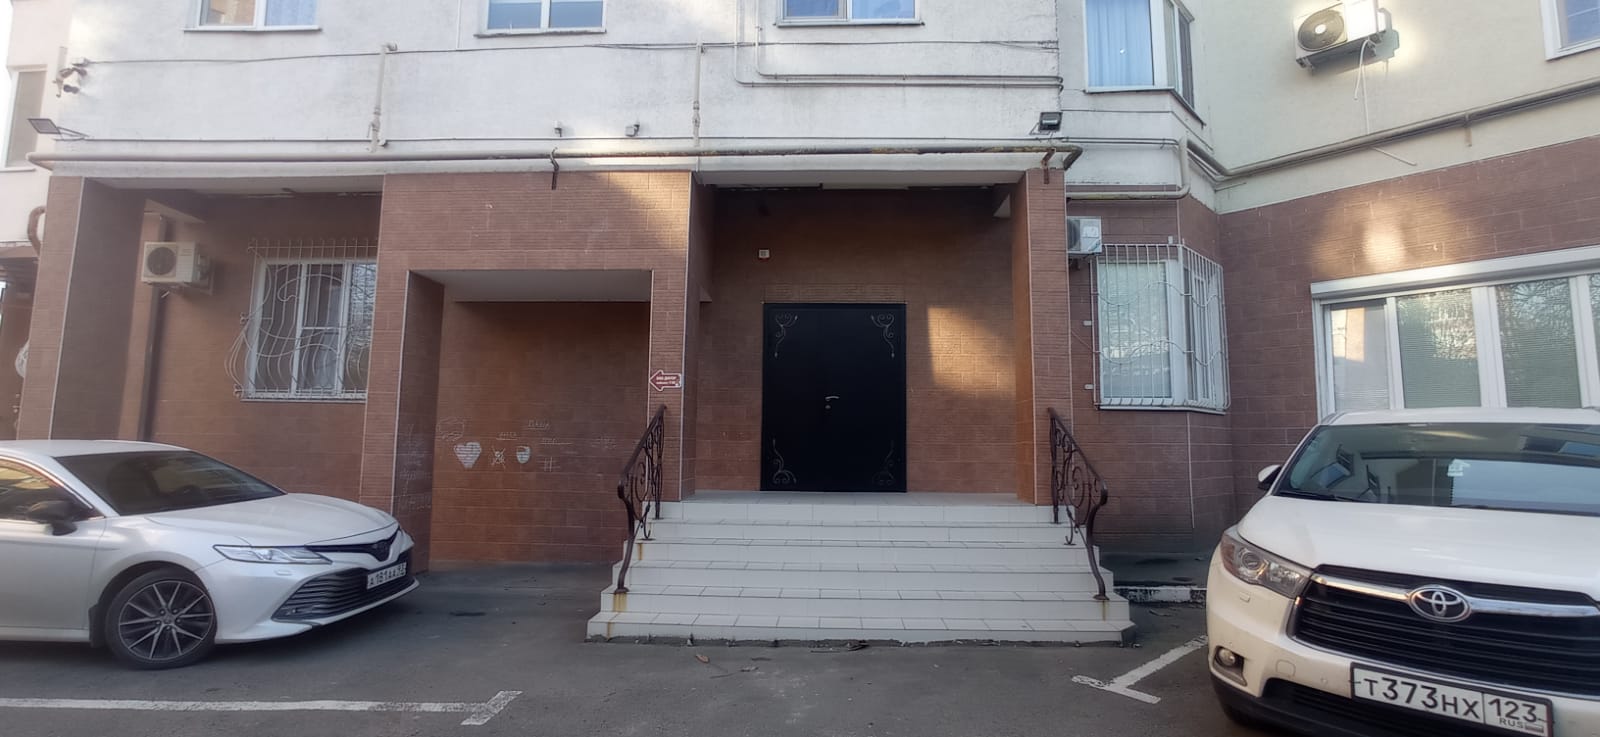 Предлагаем к аренде офисное помещение площадью 30 м², на 1ом этаже по ул. Ефремова д.101, напрямую от собственника._0